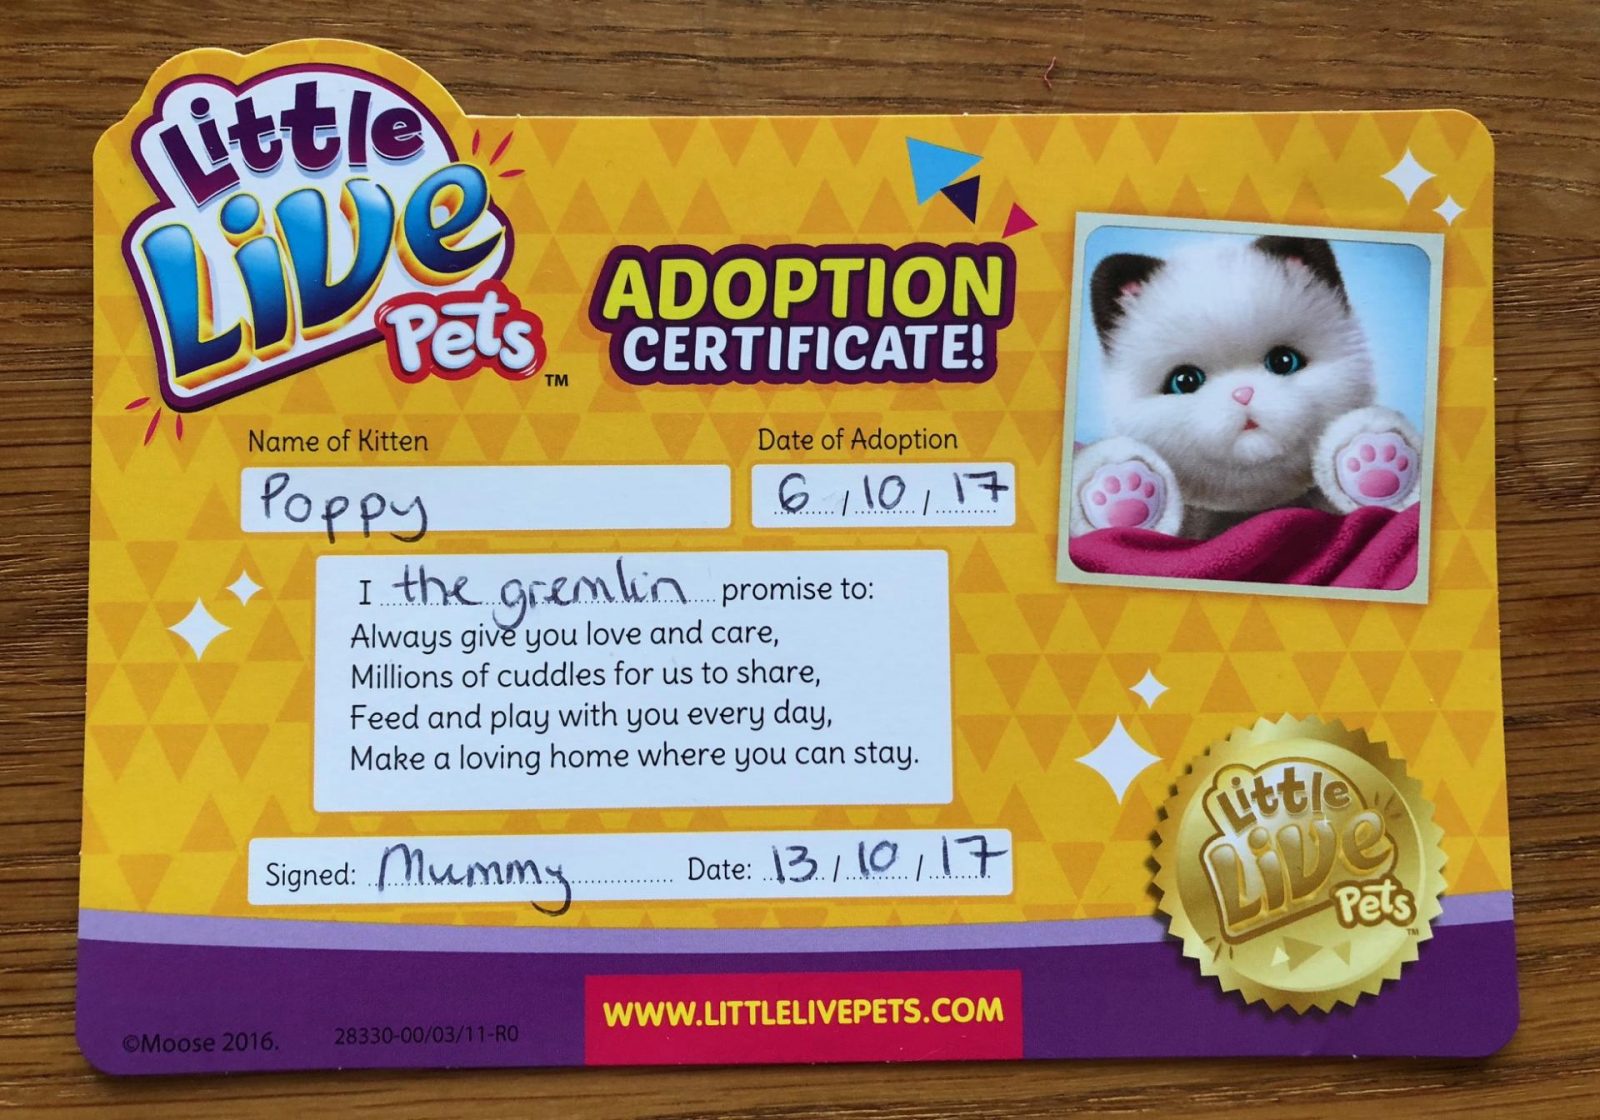 Adoption certificate for Little Lives Kitten Cuddles